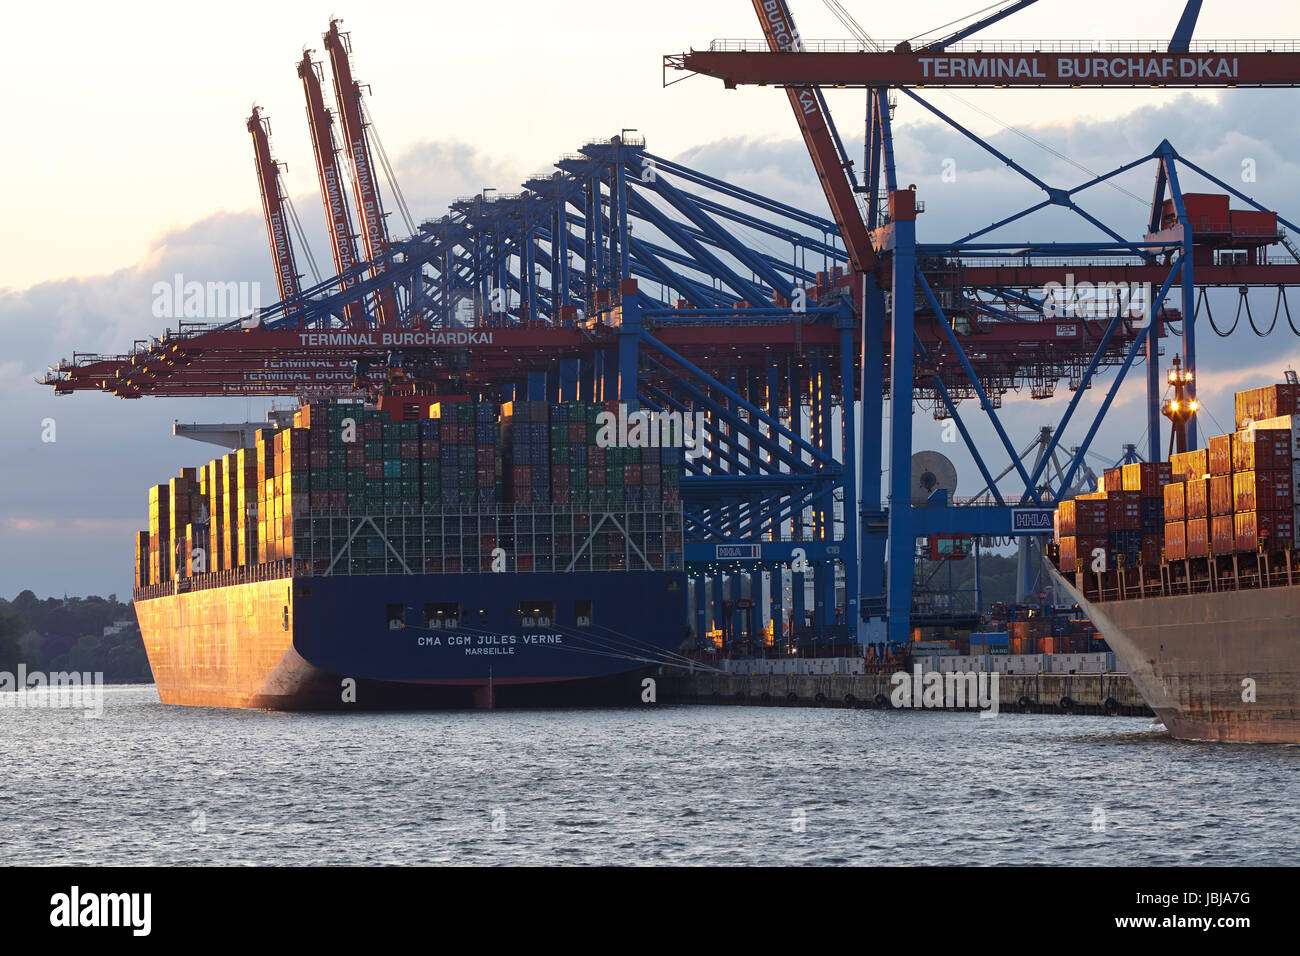 Das Containerschiff CMA CGM Jules Verne ist am terminal Hamburg Burchardkai am Mai 2014 03 am Abend geladen/entladen. Das warme Licht der untergehenden Sonne spiegelt sich auf dem Schiff. Stockfoto